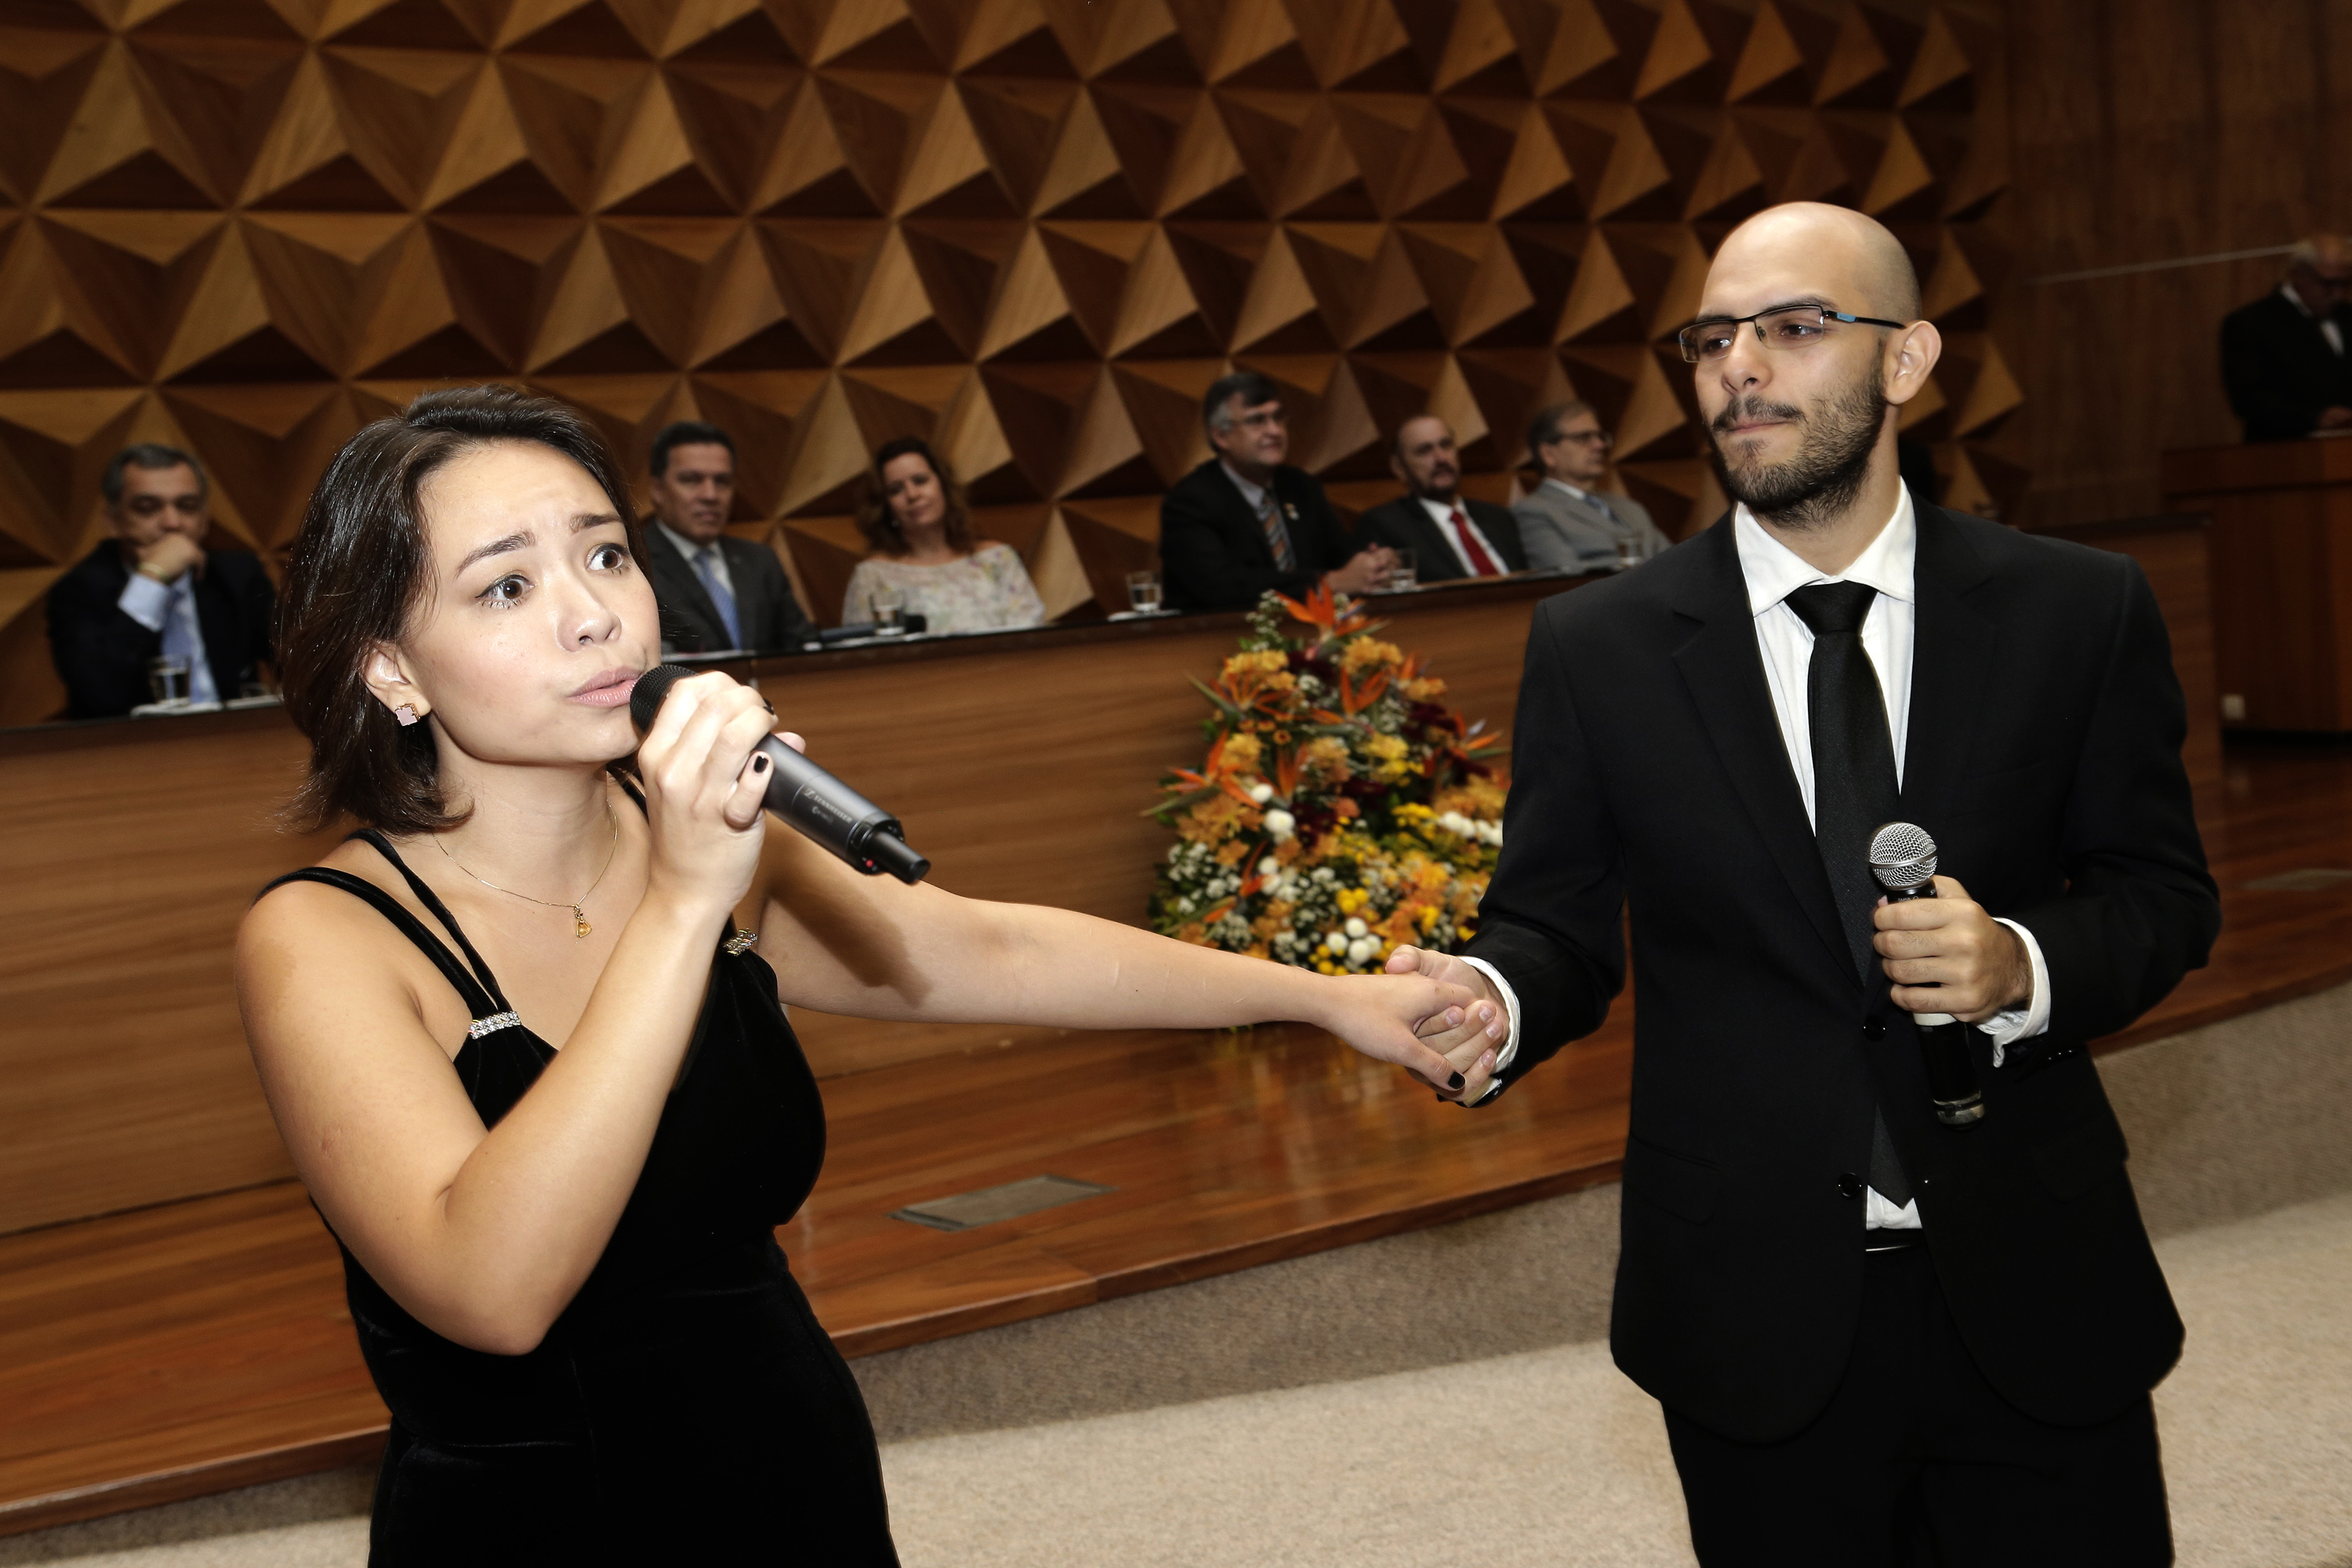 Keila Lin e Raphael Teixeira interpretaram composições do início do século 20. Fotos: Foca Lisboa/ UFMG